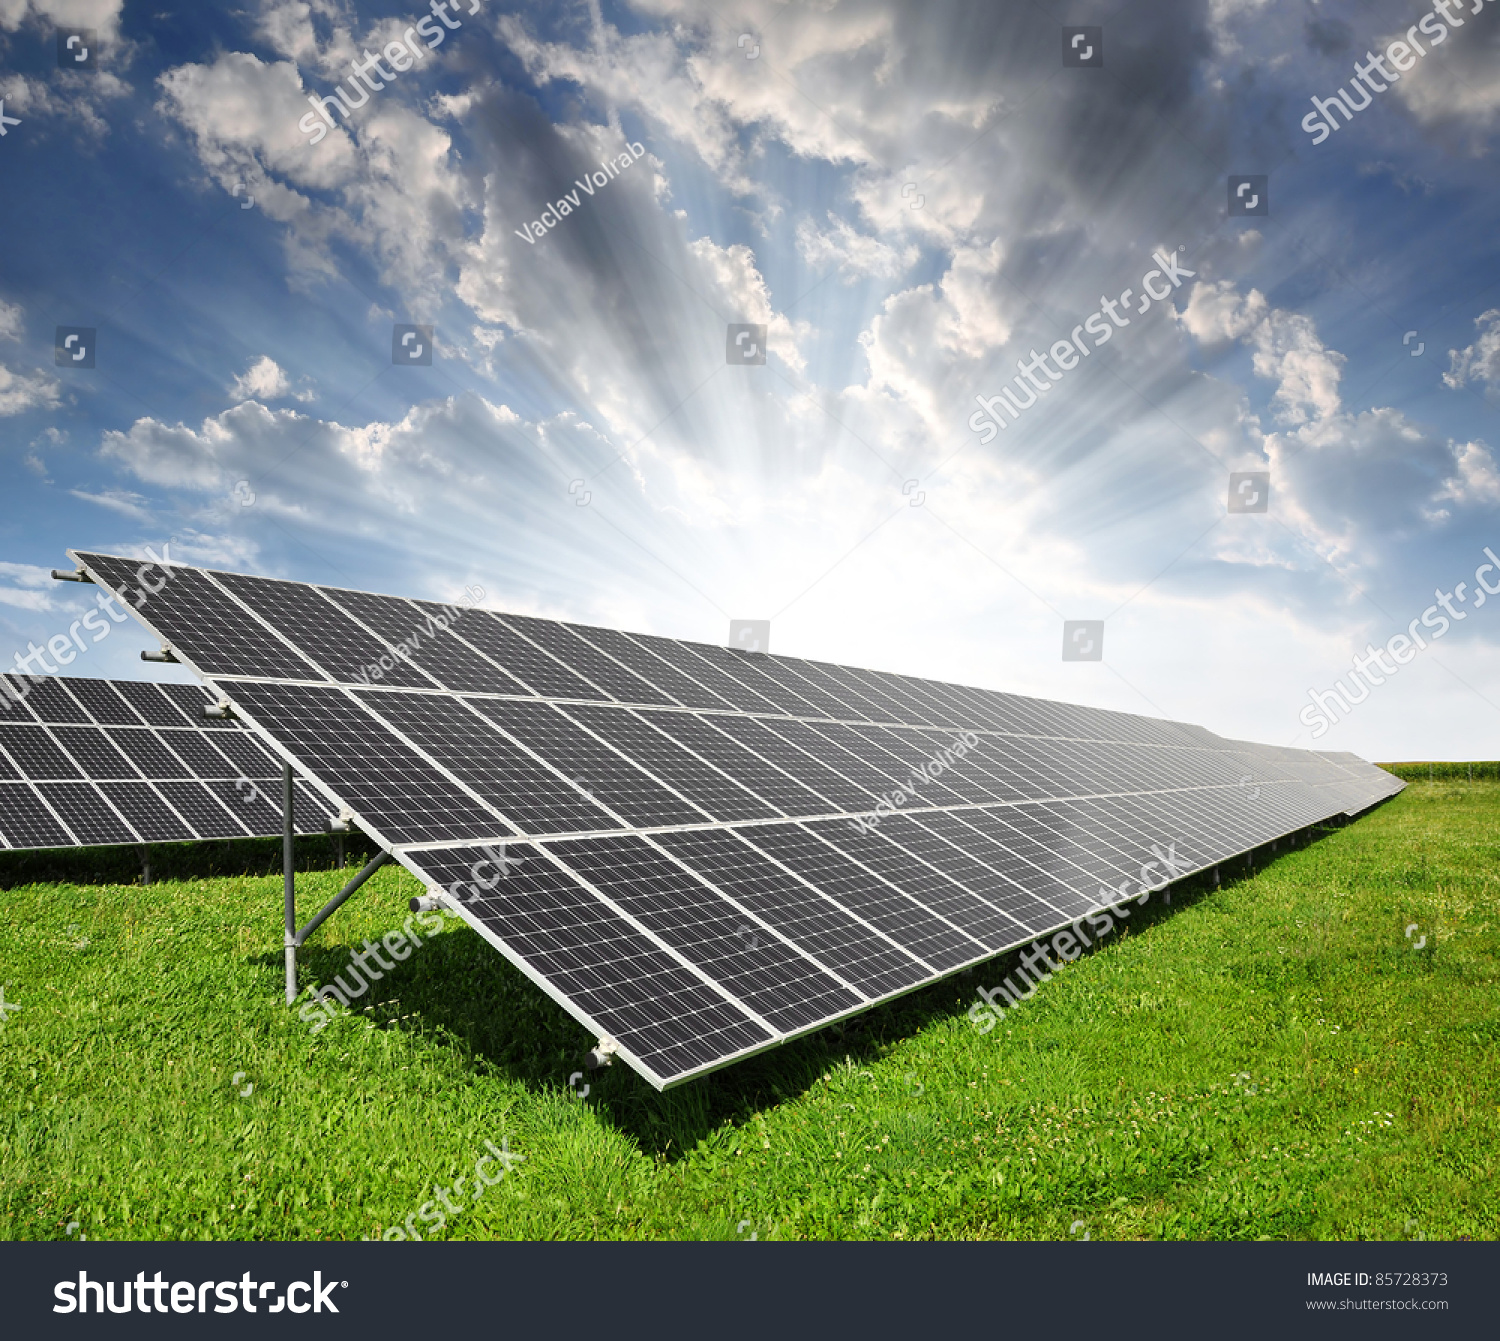 PowerPoint Template solar energy panels against sky (pmojpkok)